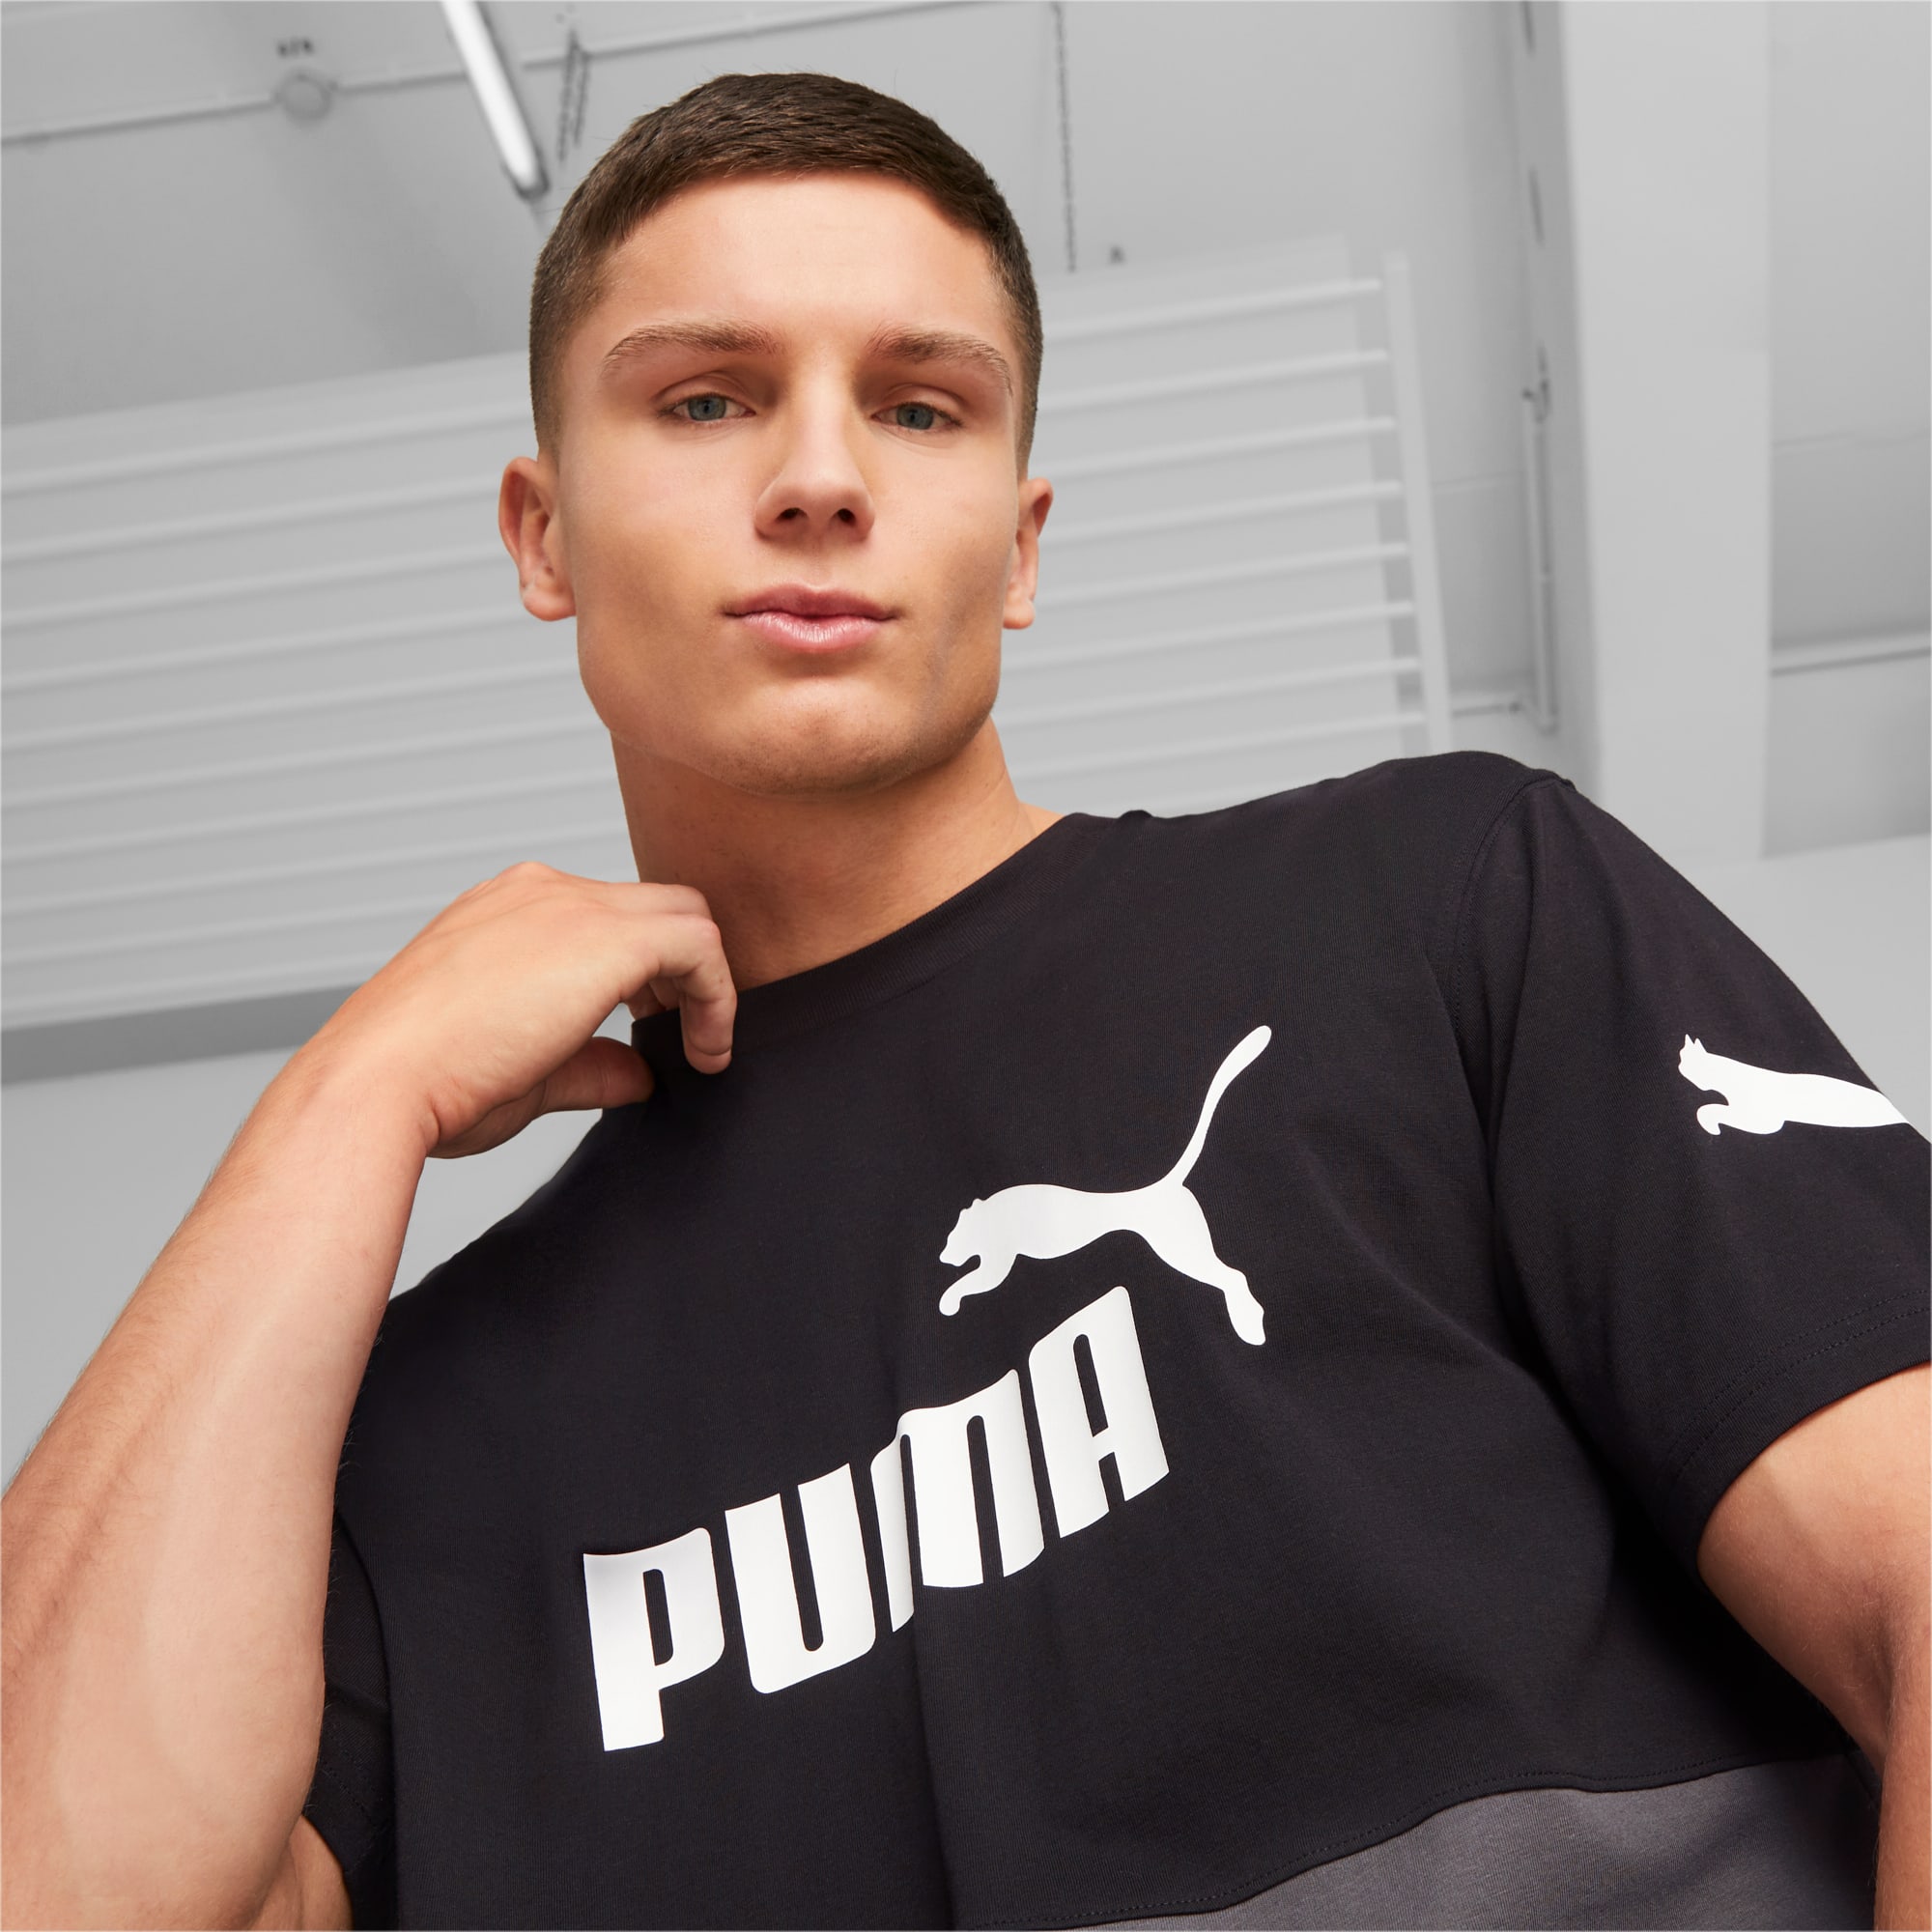 Comprar Camiseta Hombre Puma Power Colorbloc 673321-02